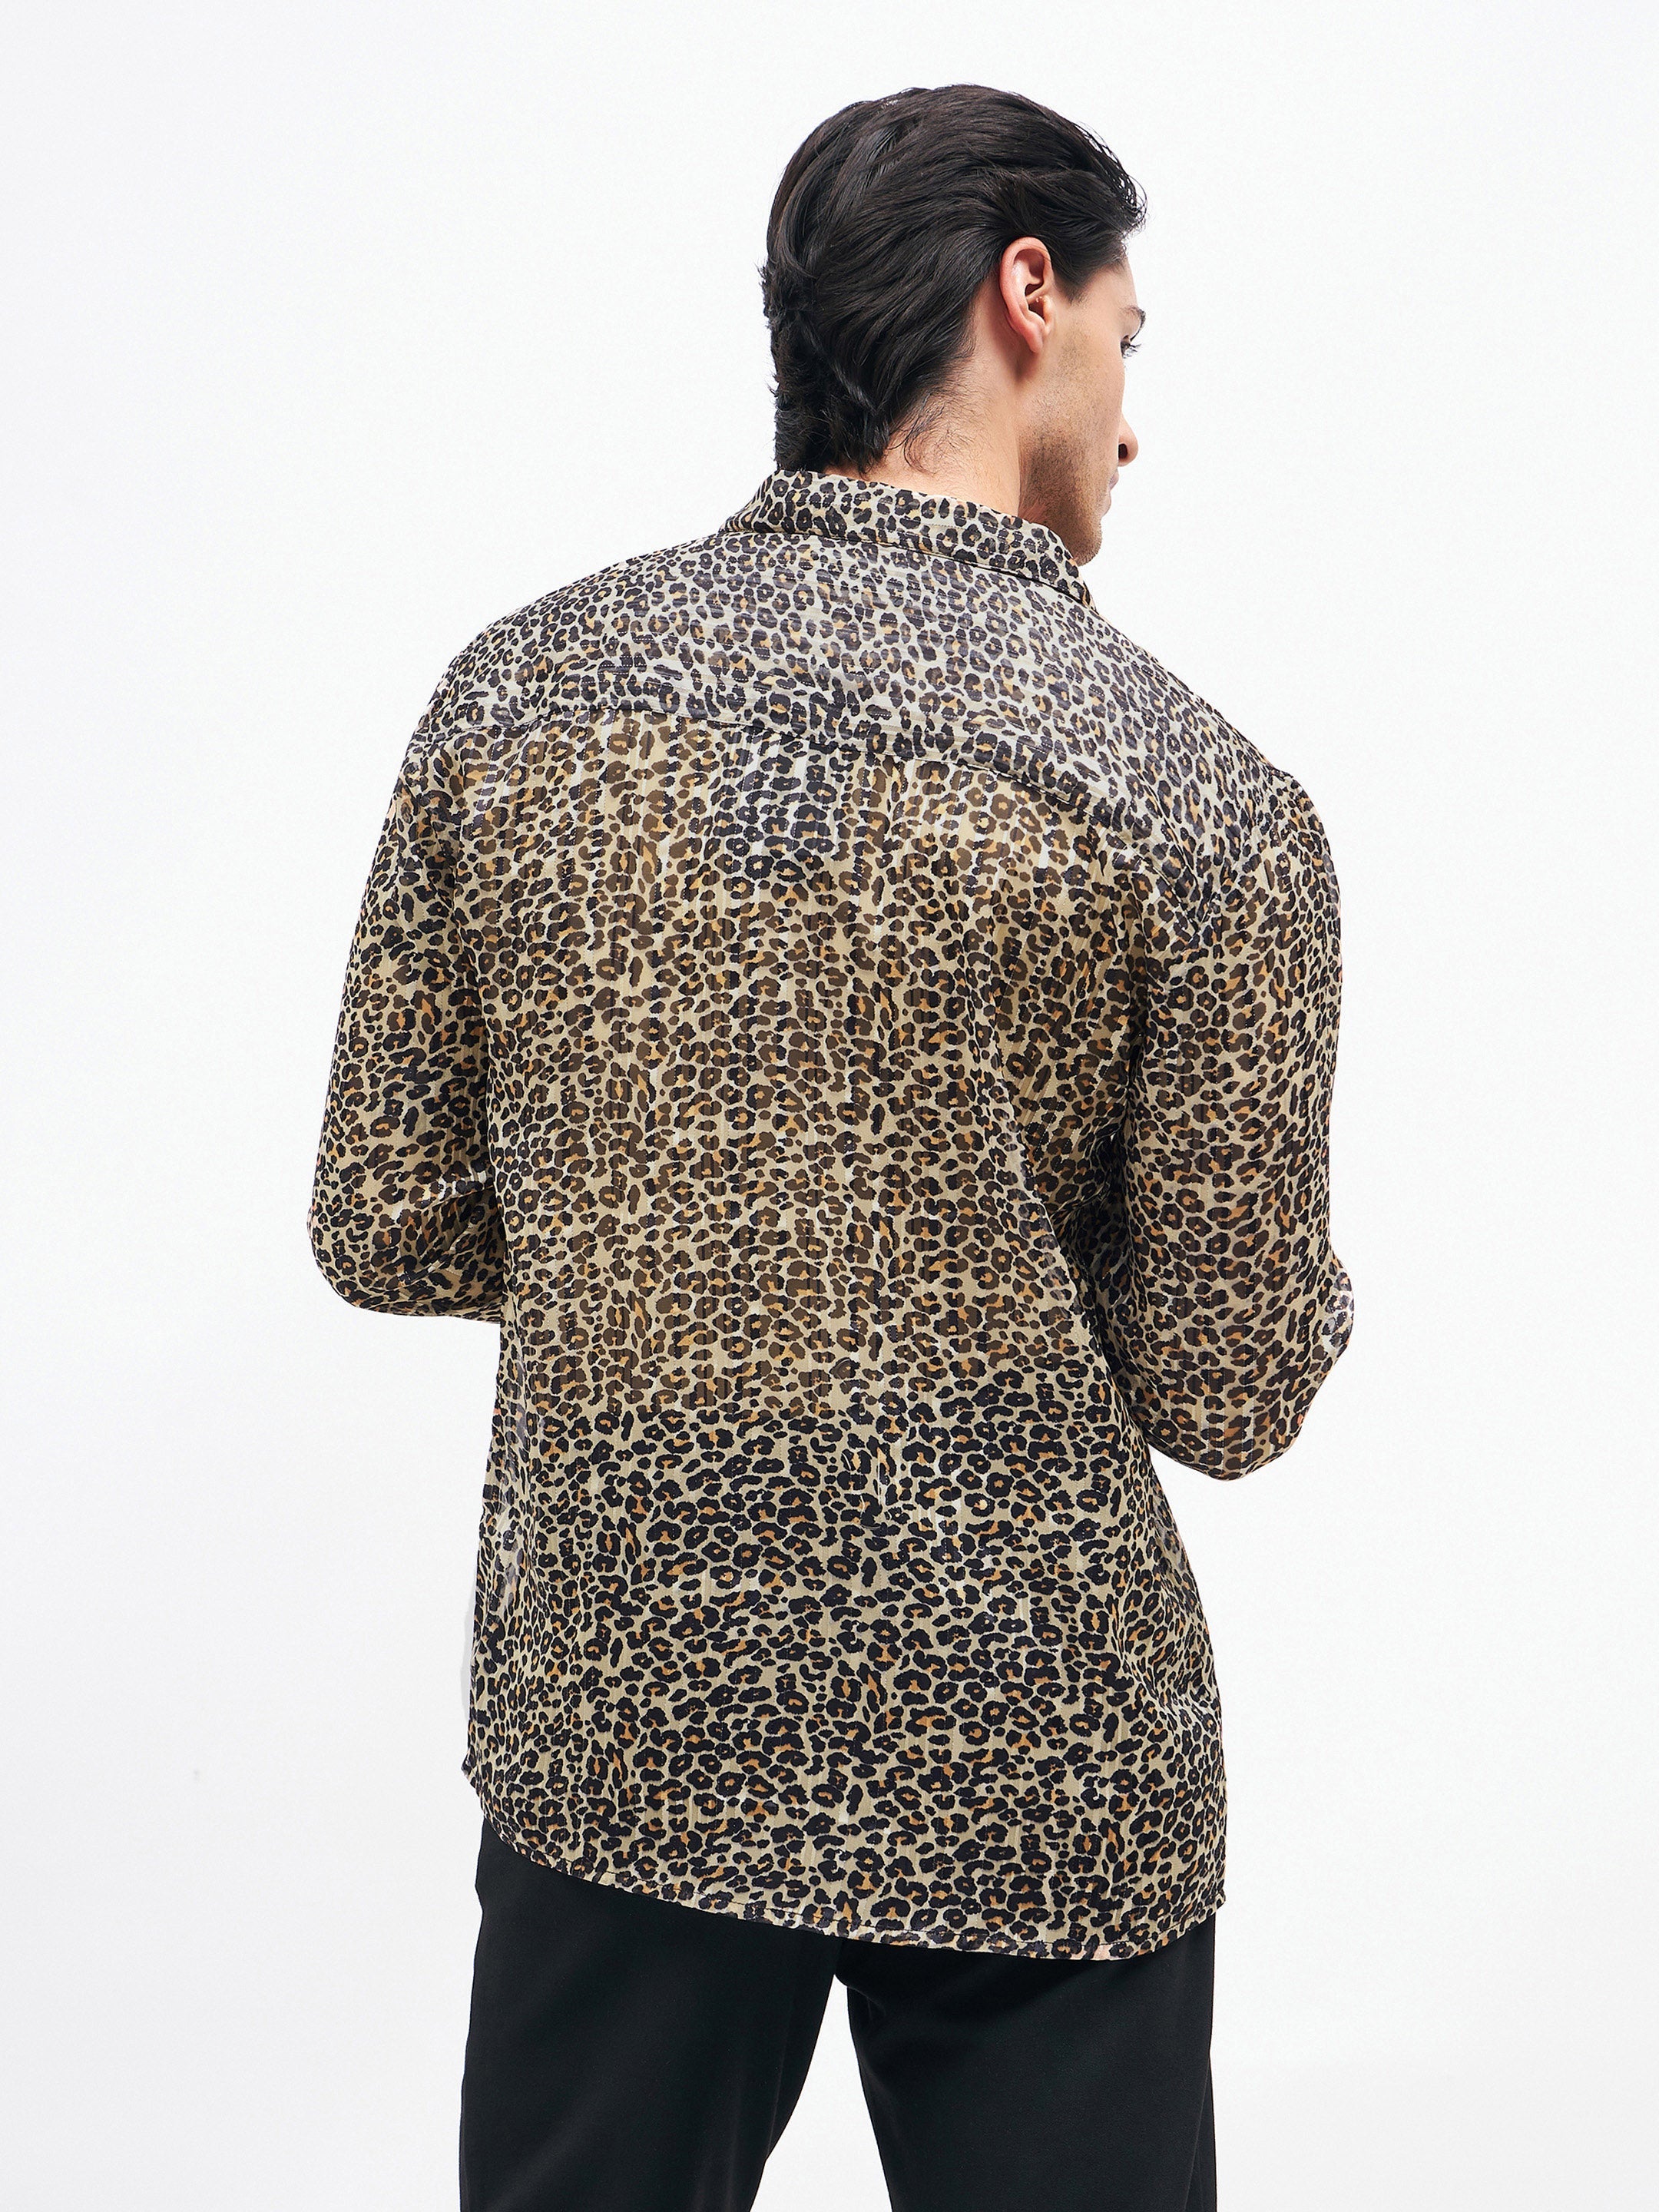 Men's Leopard Print Lurex Party Shirt - MASCLN SASSAFRAS